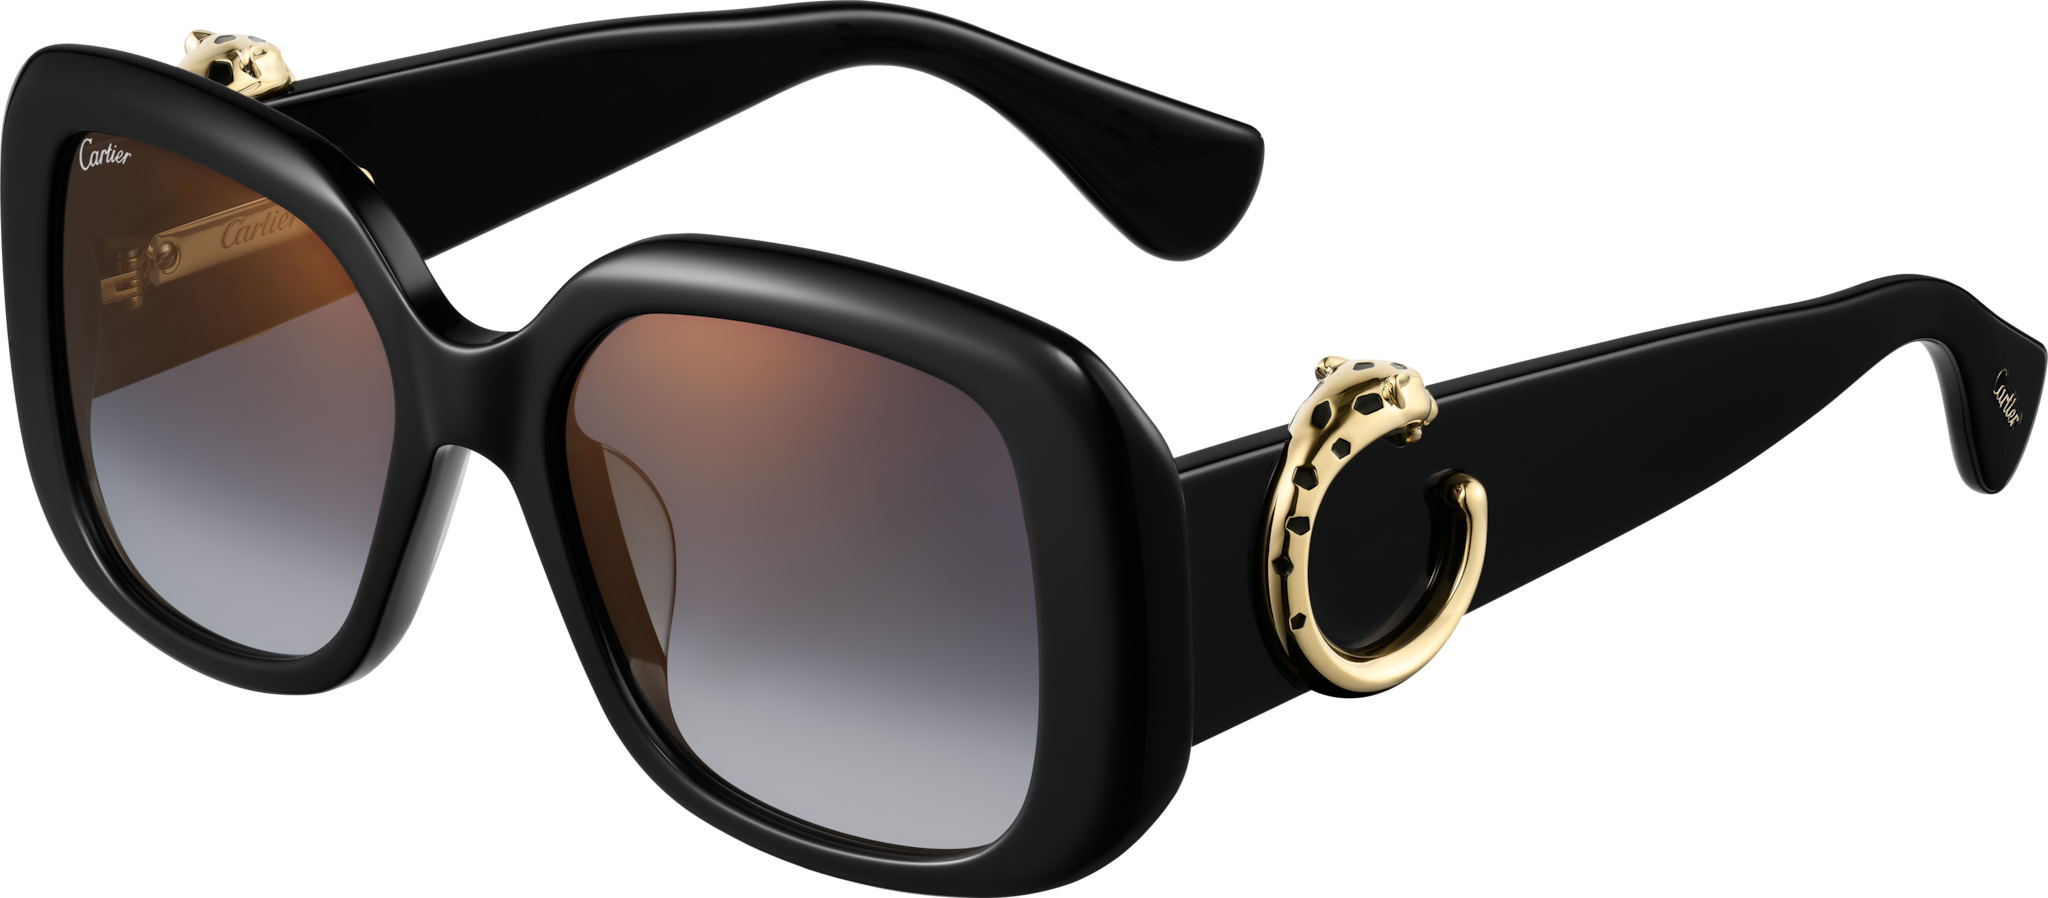 Gafas de sol Panthère de CartierAcetato negro, lentes grises 